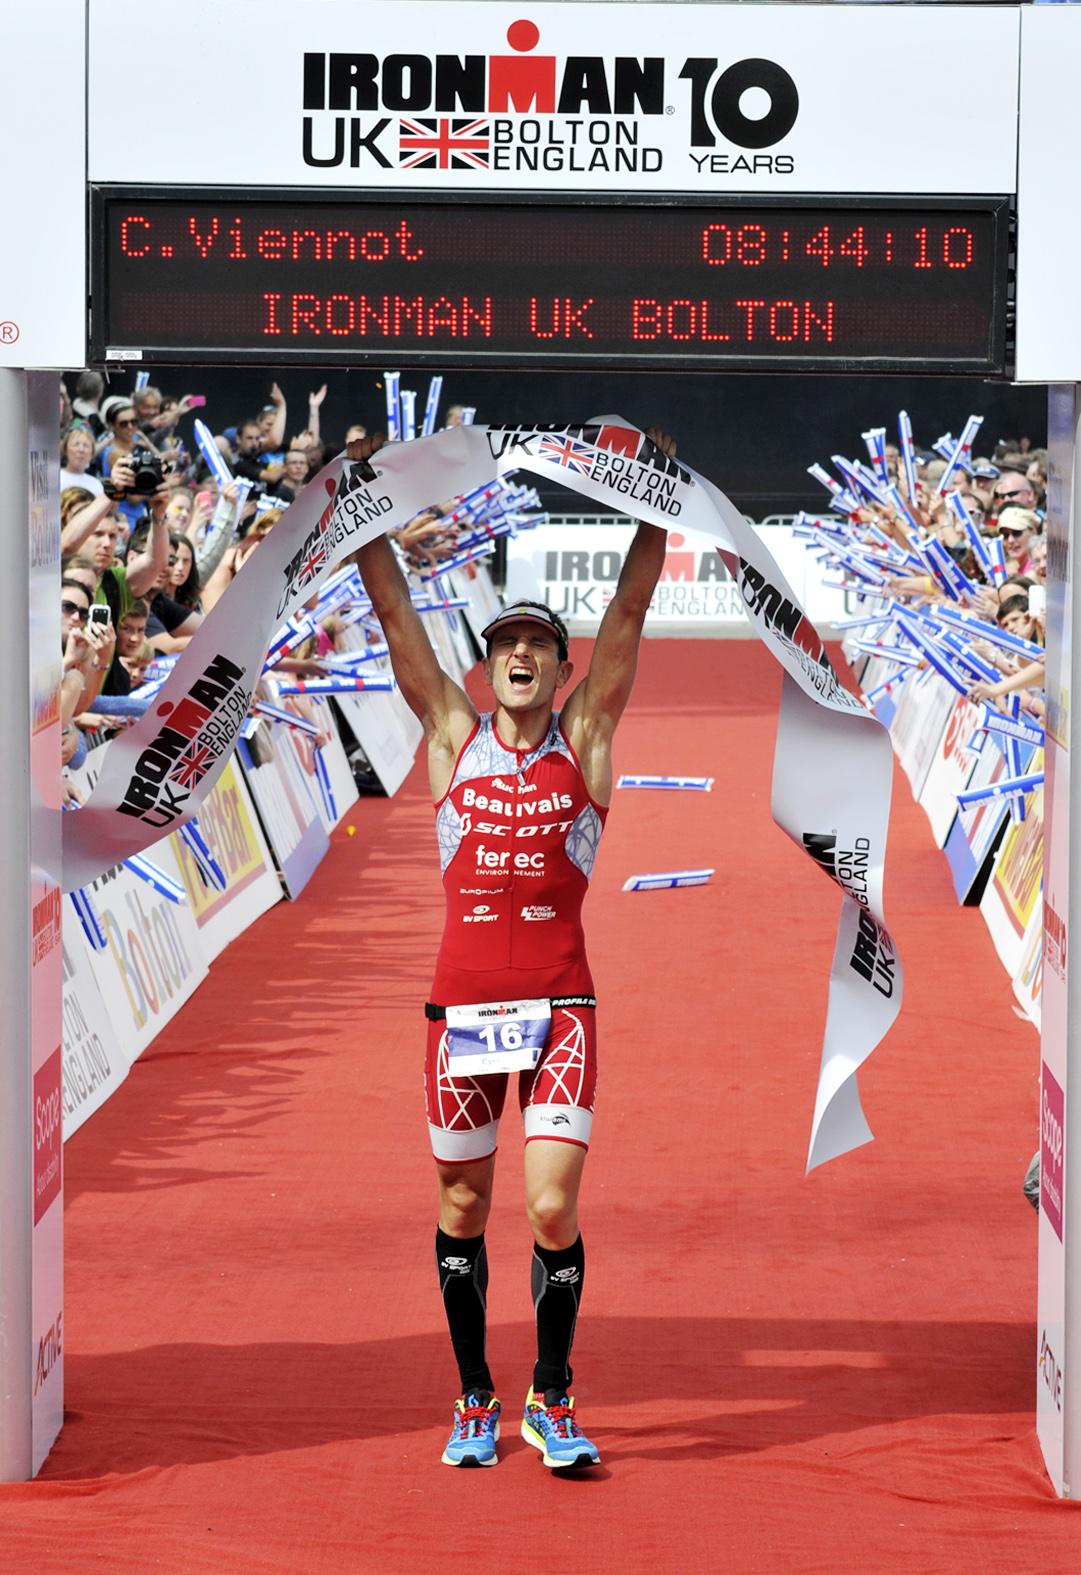 Ironman UK Bolton 2014